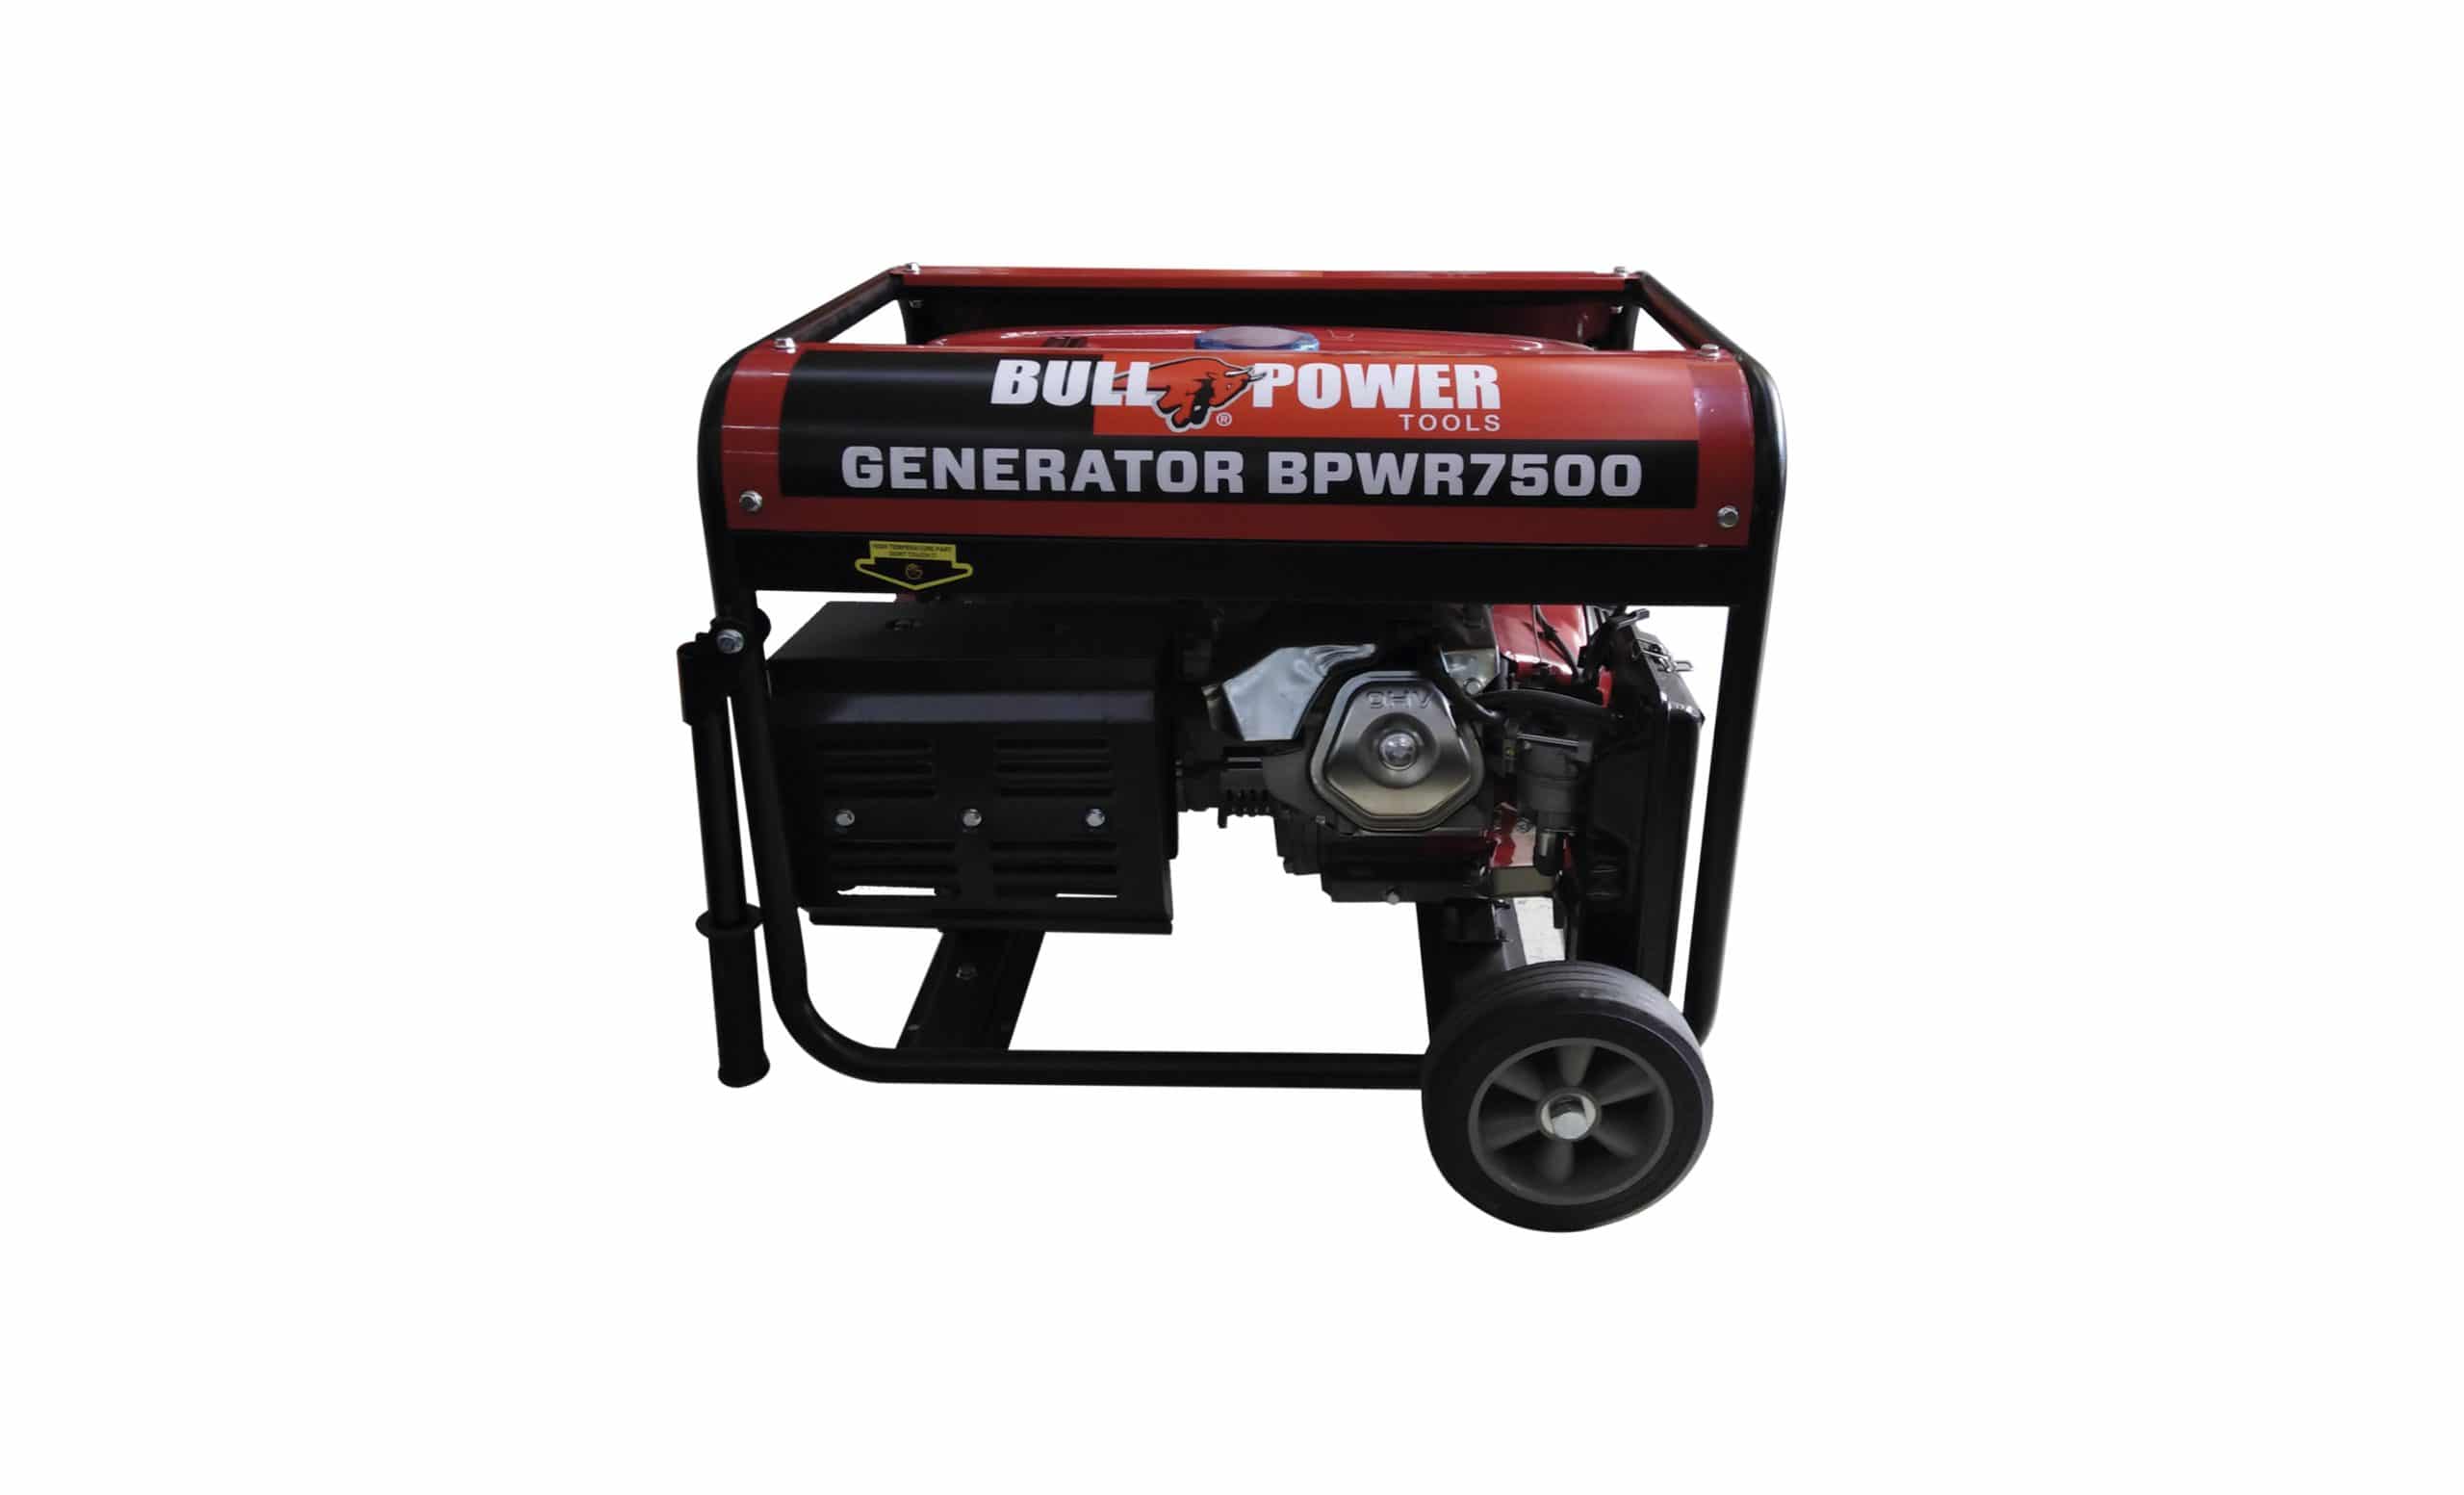 HC134050 - GENERADOR A GASOL 7500W 440CCBPWR7500 BULL POWER PORTATIL - BULL POWER